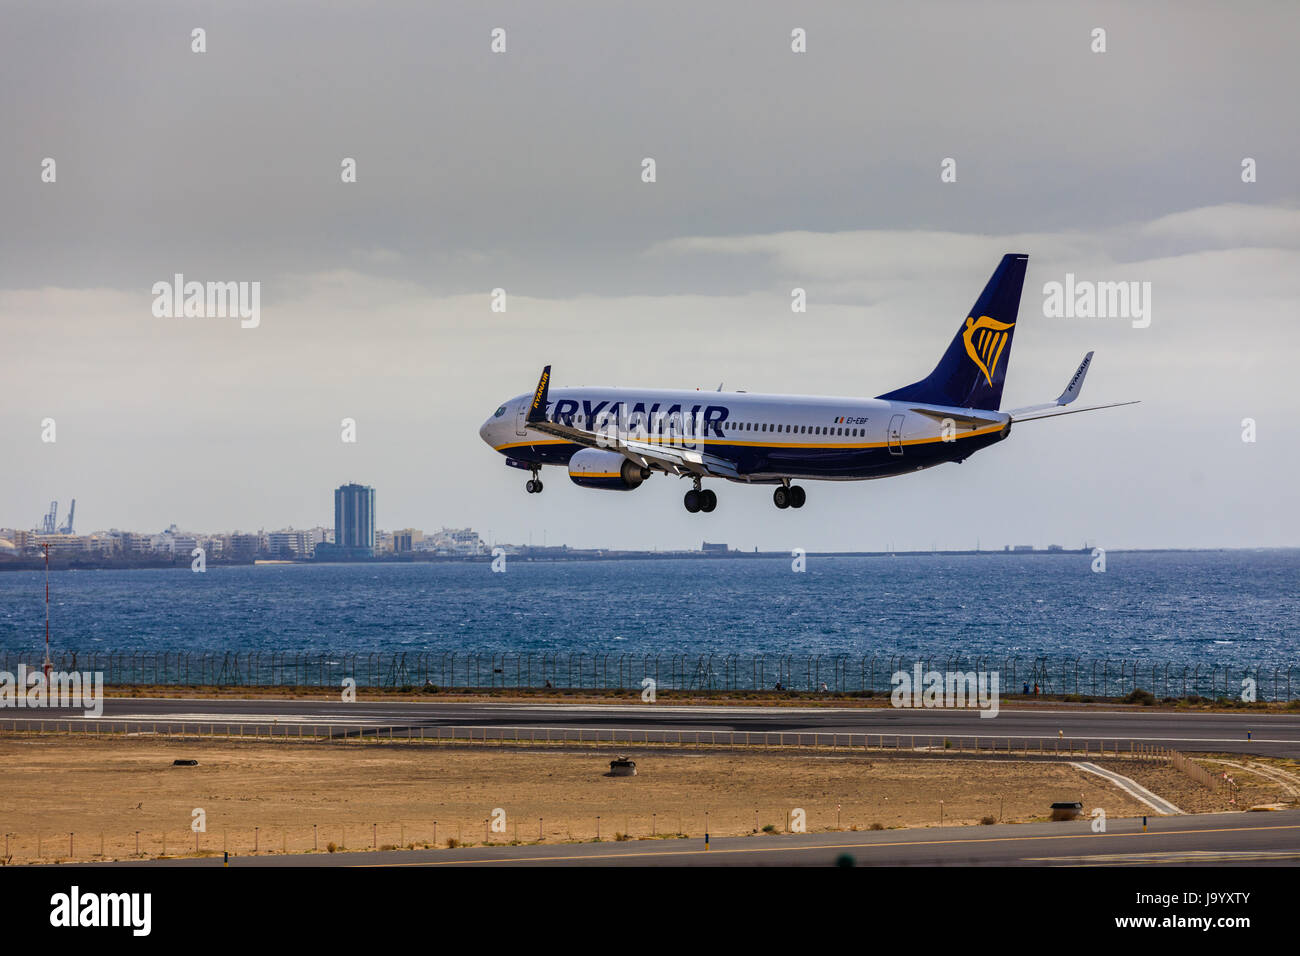 ARECIFE, Spagna - Aprile 15 2017: Boeing 737-800 di Ryanair in atterraggio a Lanzarote Airport Foto Stock